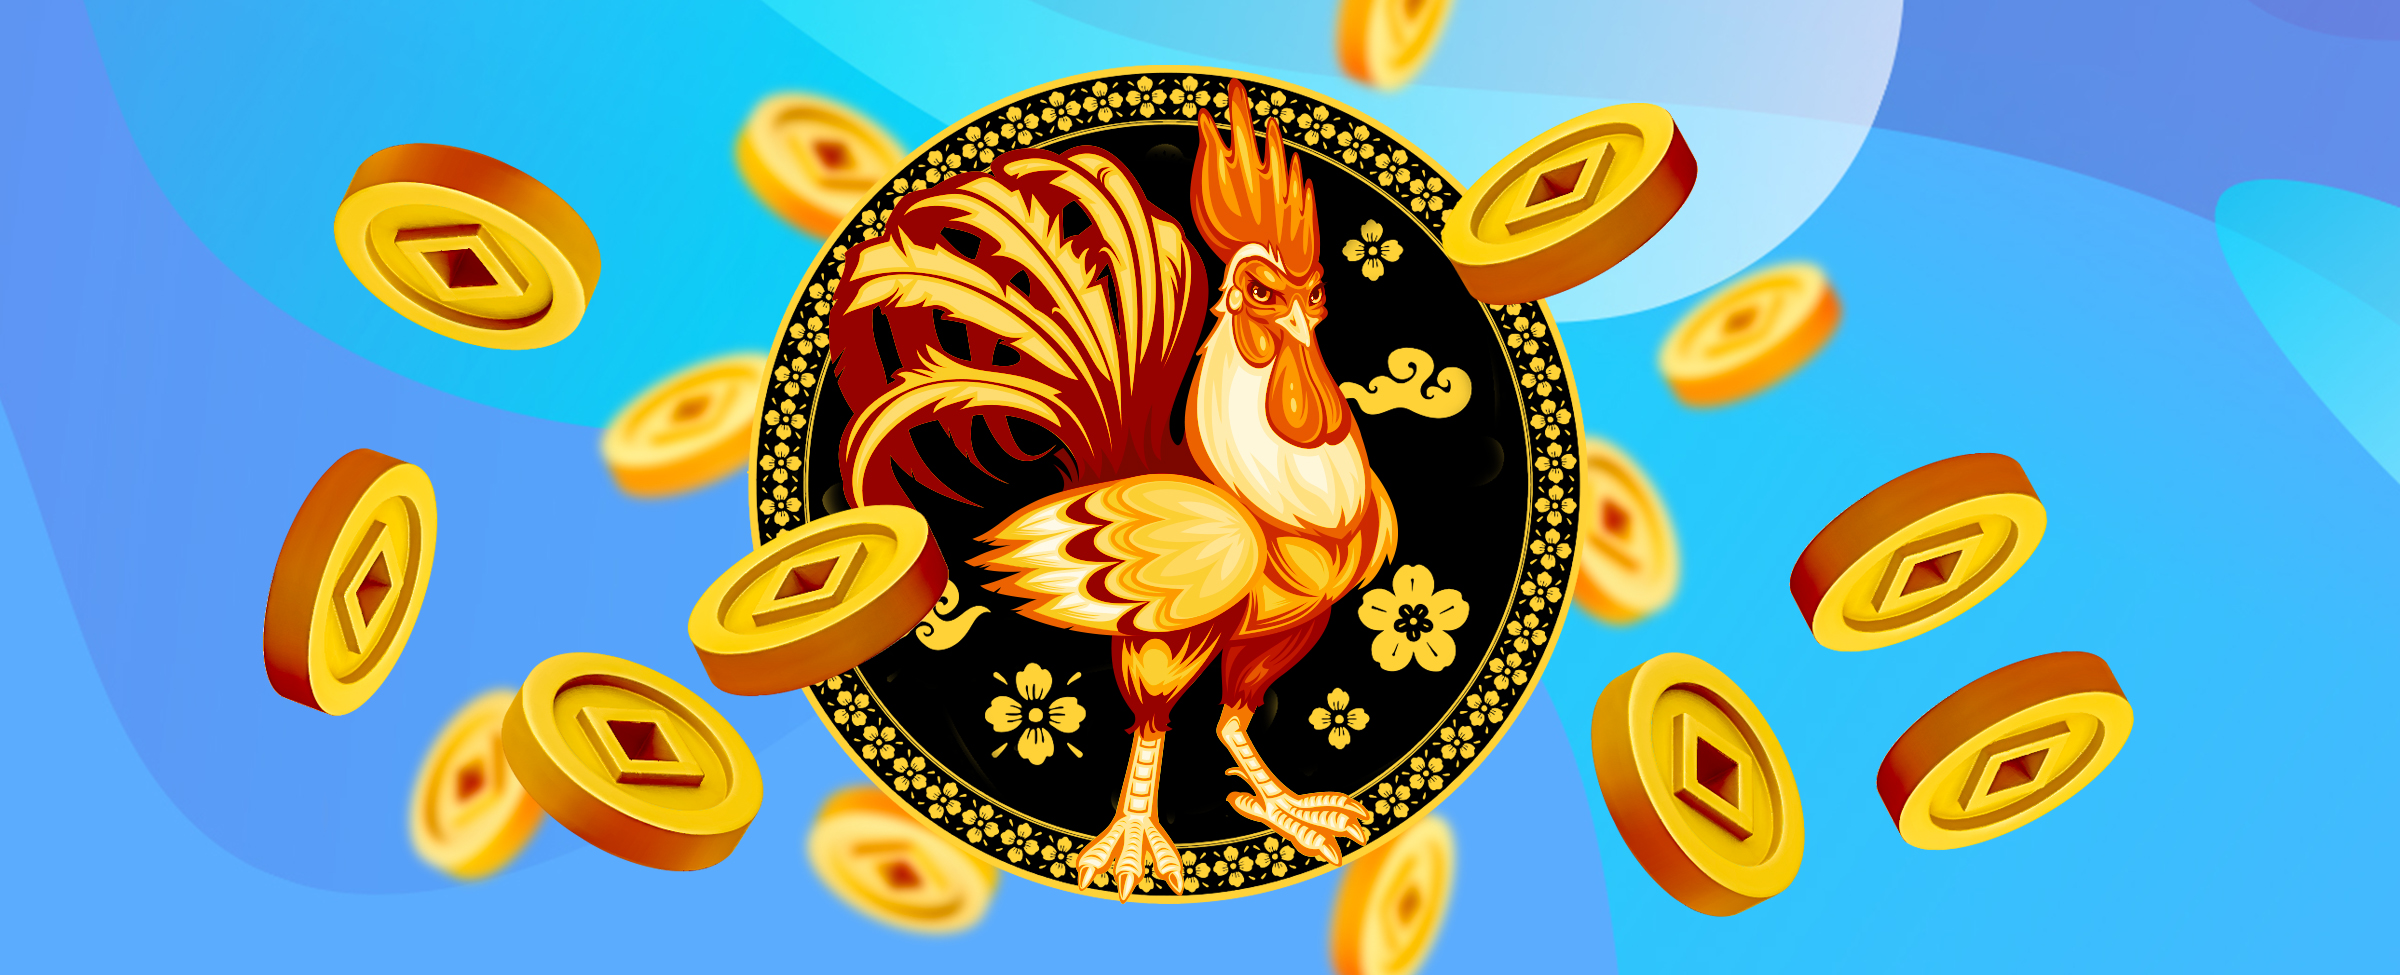 Ayam bergambar berwarna oranye dan emas berdiri di dalam lingkaran hitam dengan pinggiran berpola, dikelilingi oleh koin kasino dari SlotsLV Casino.